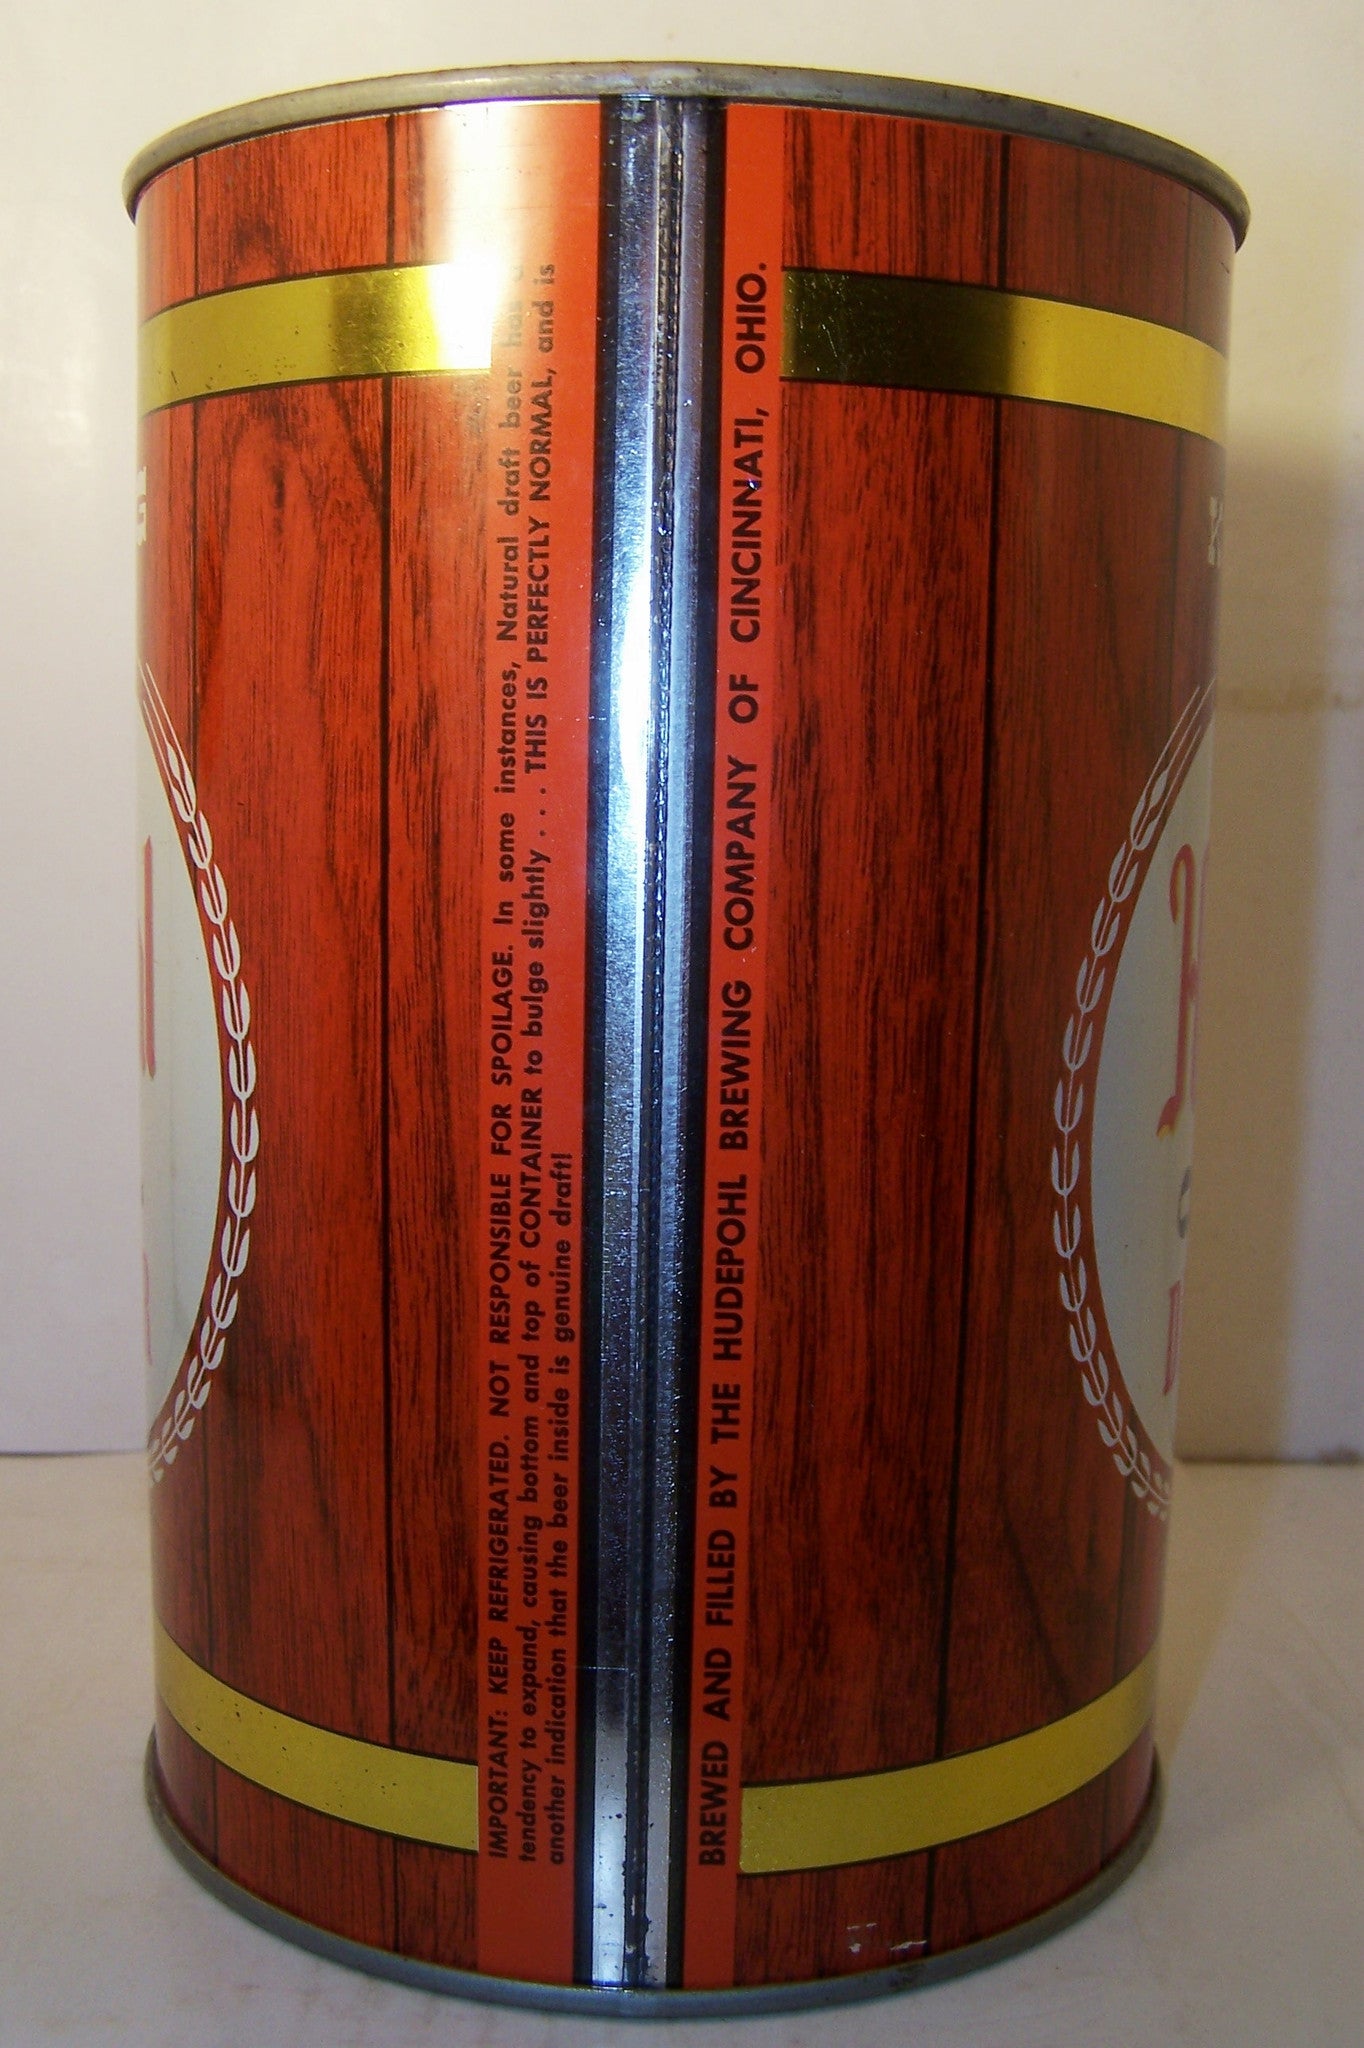 Hudepohl Original Draft Beer, "Tall Can" USBC 245-4 Grade 1/1+